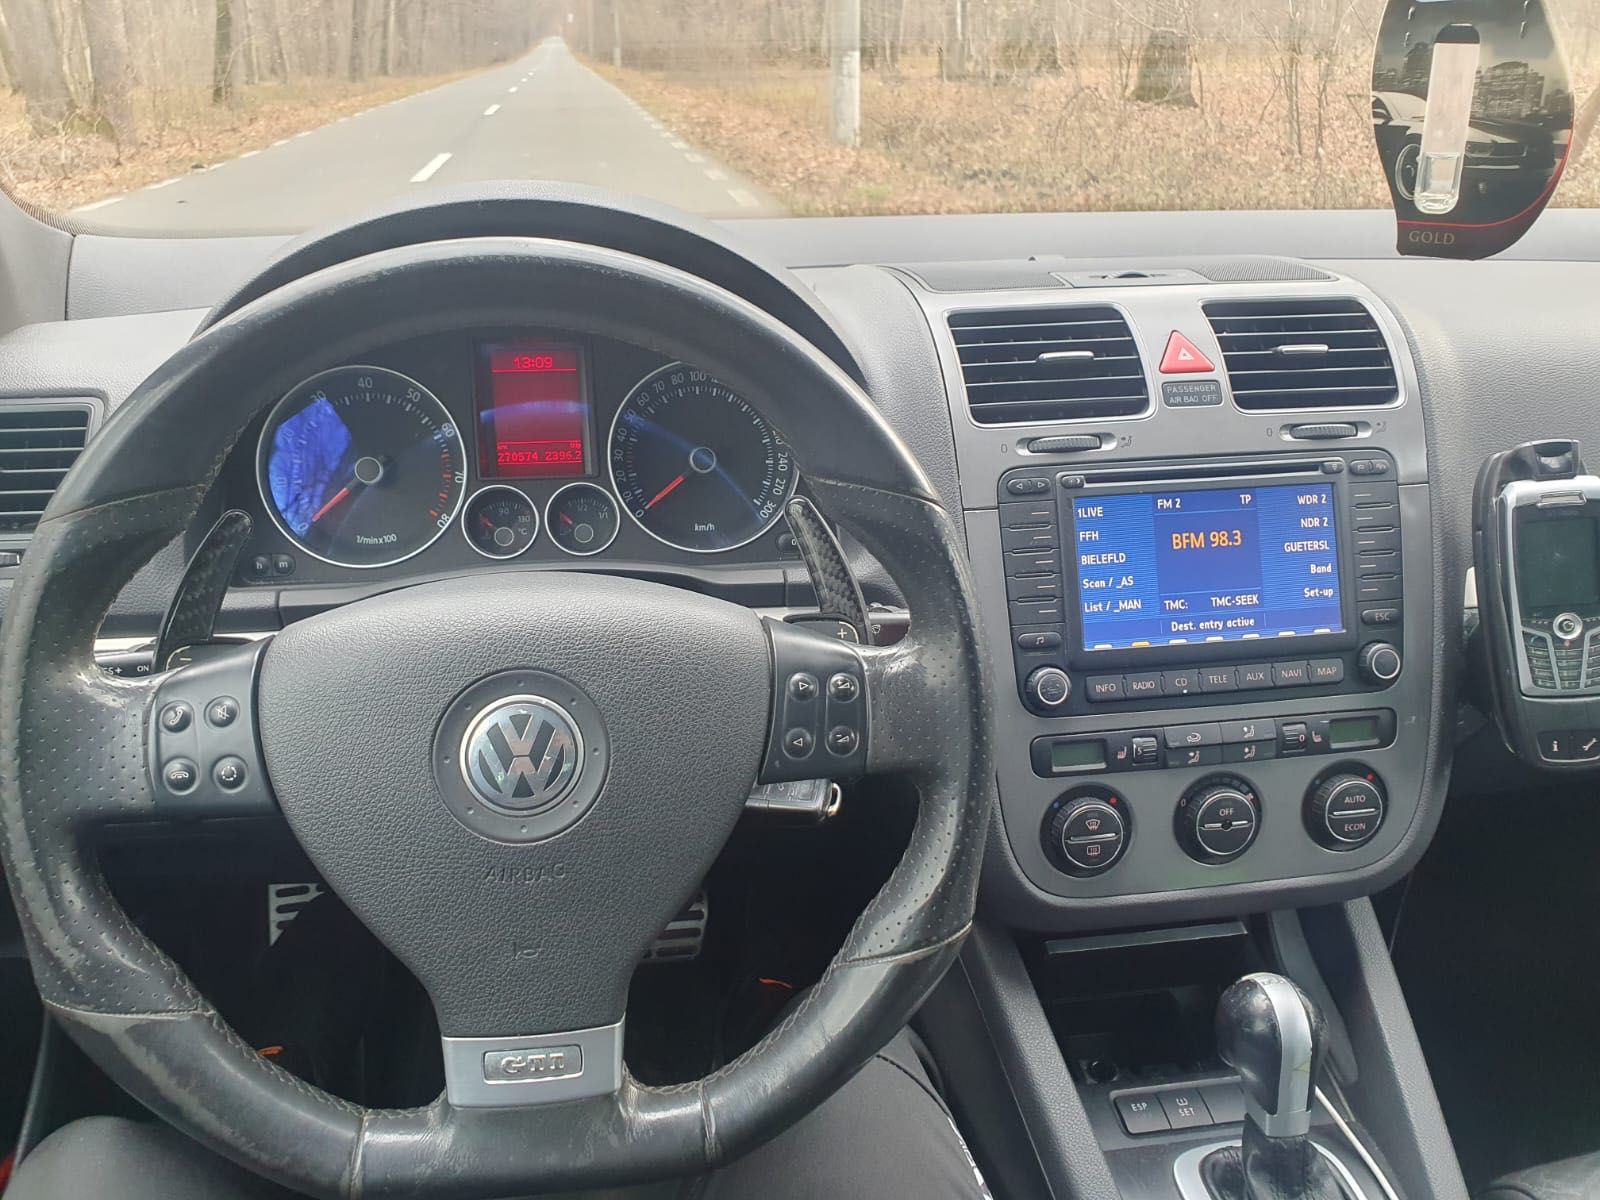 VW V Golf 5 GTI 2.0 TFSI Automat